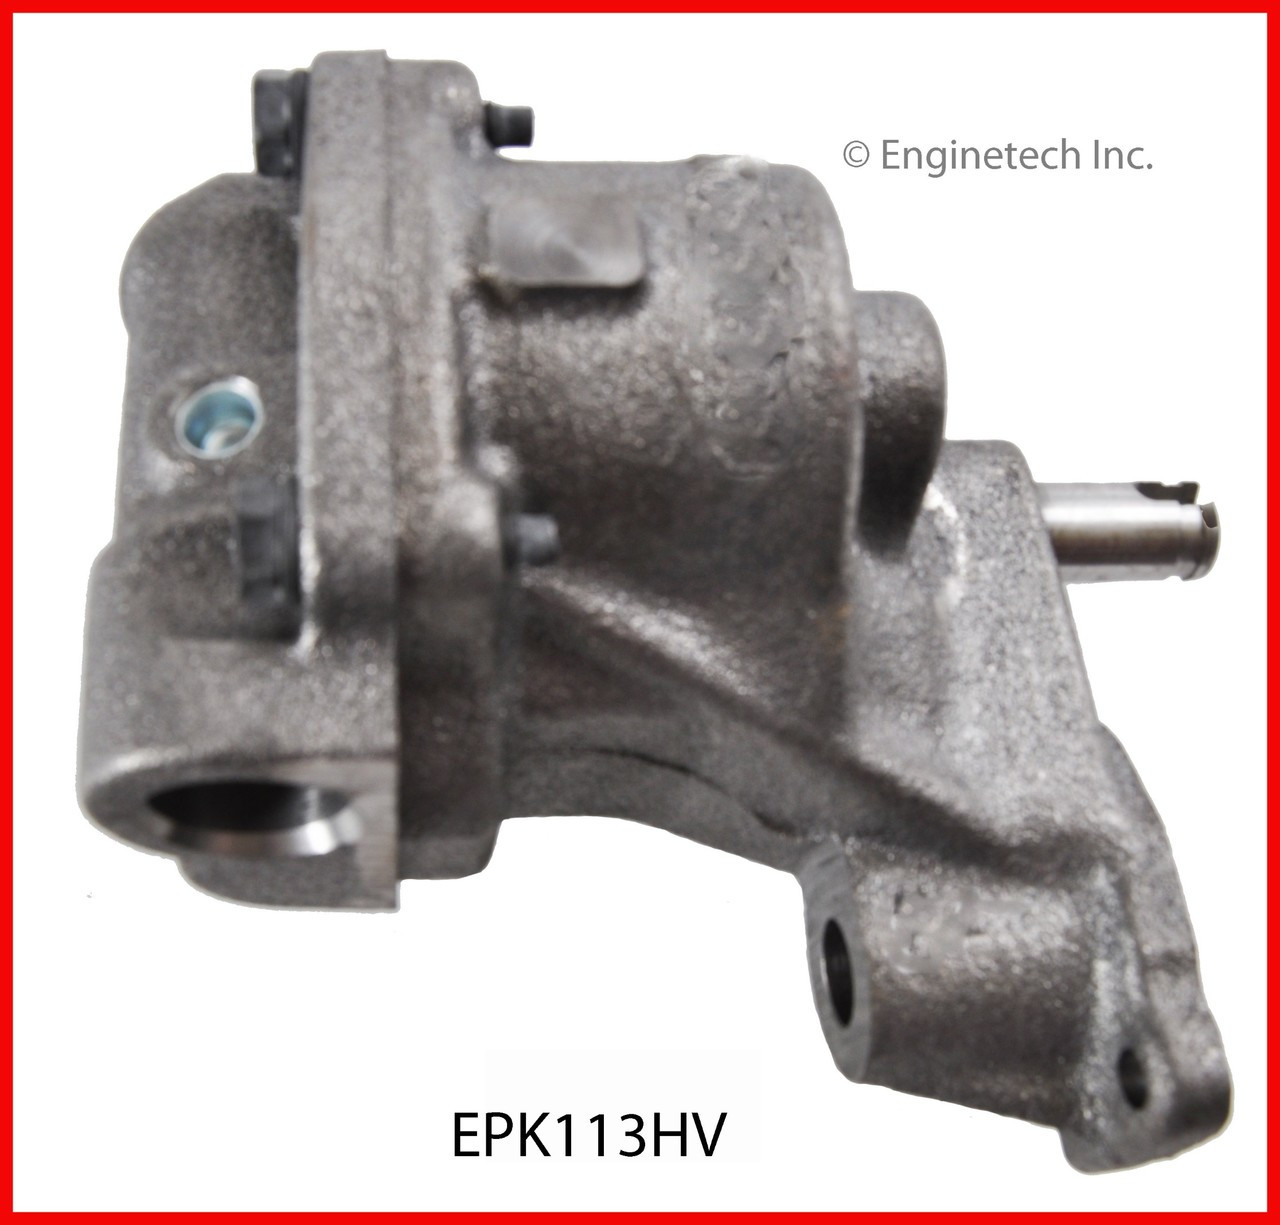 Oil Pump - 2001 GMC Jimmy 4.3L (EPK113HV.K562)